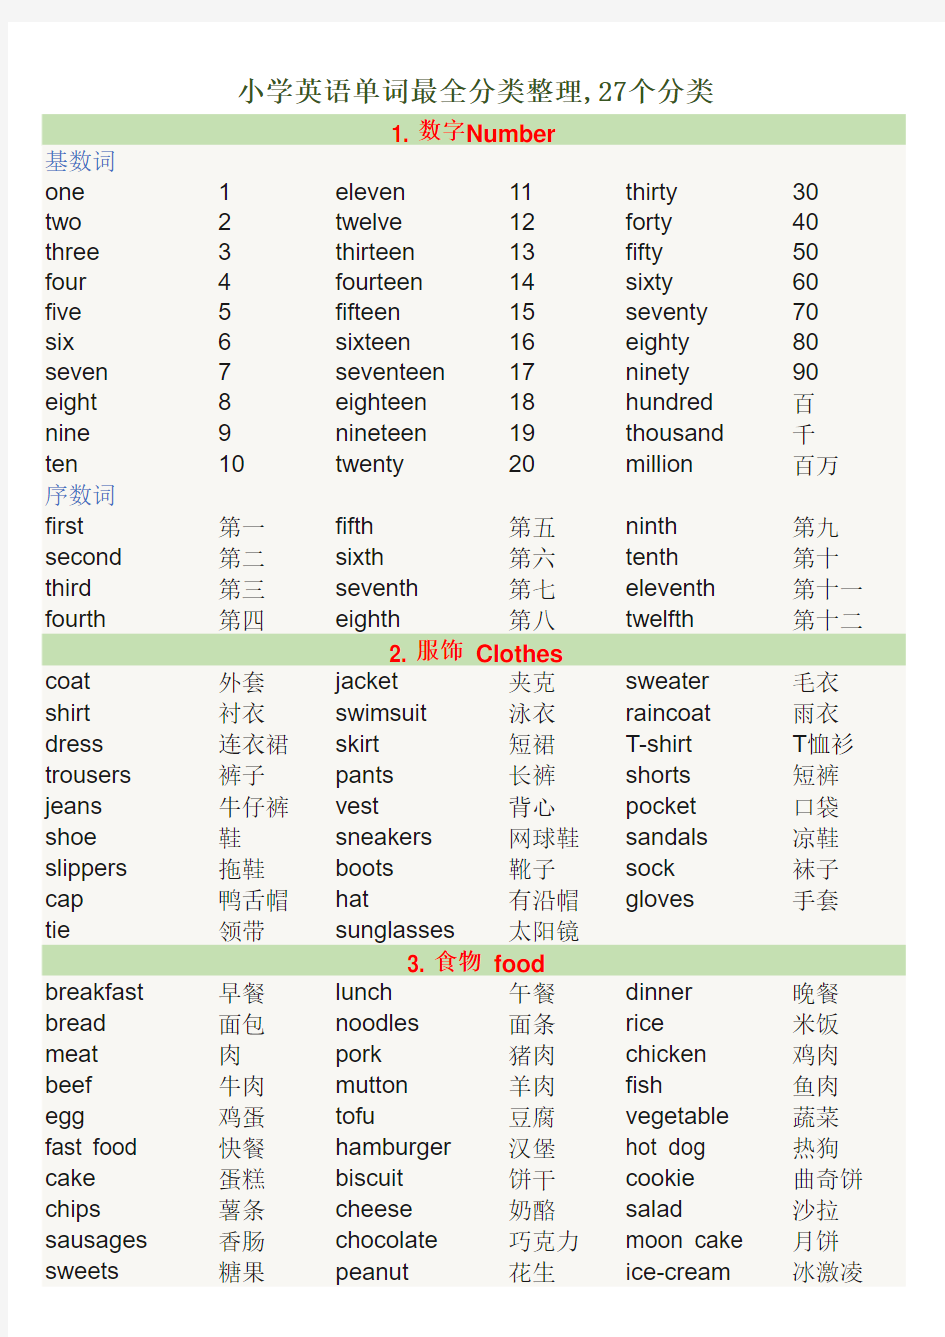 小学英语单词最全分类整理,27个分类,史上最全最整齐,下载可直接打印